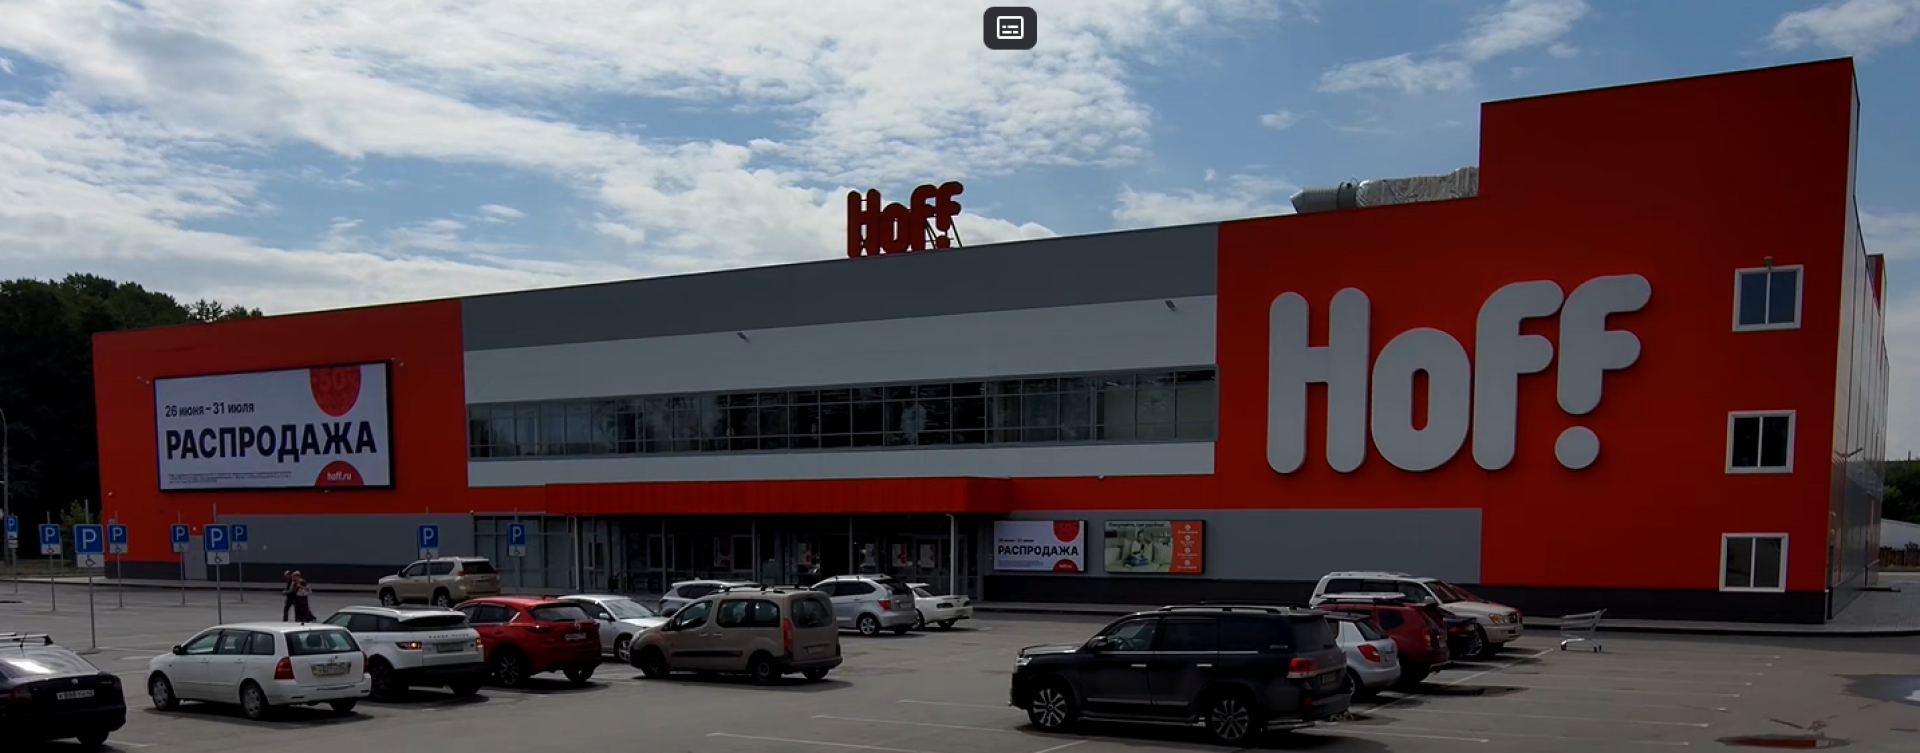 Торговый центр HOFF в г. Новосибирске